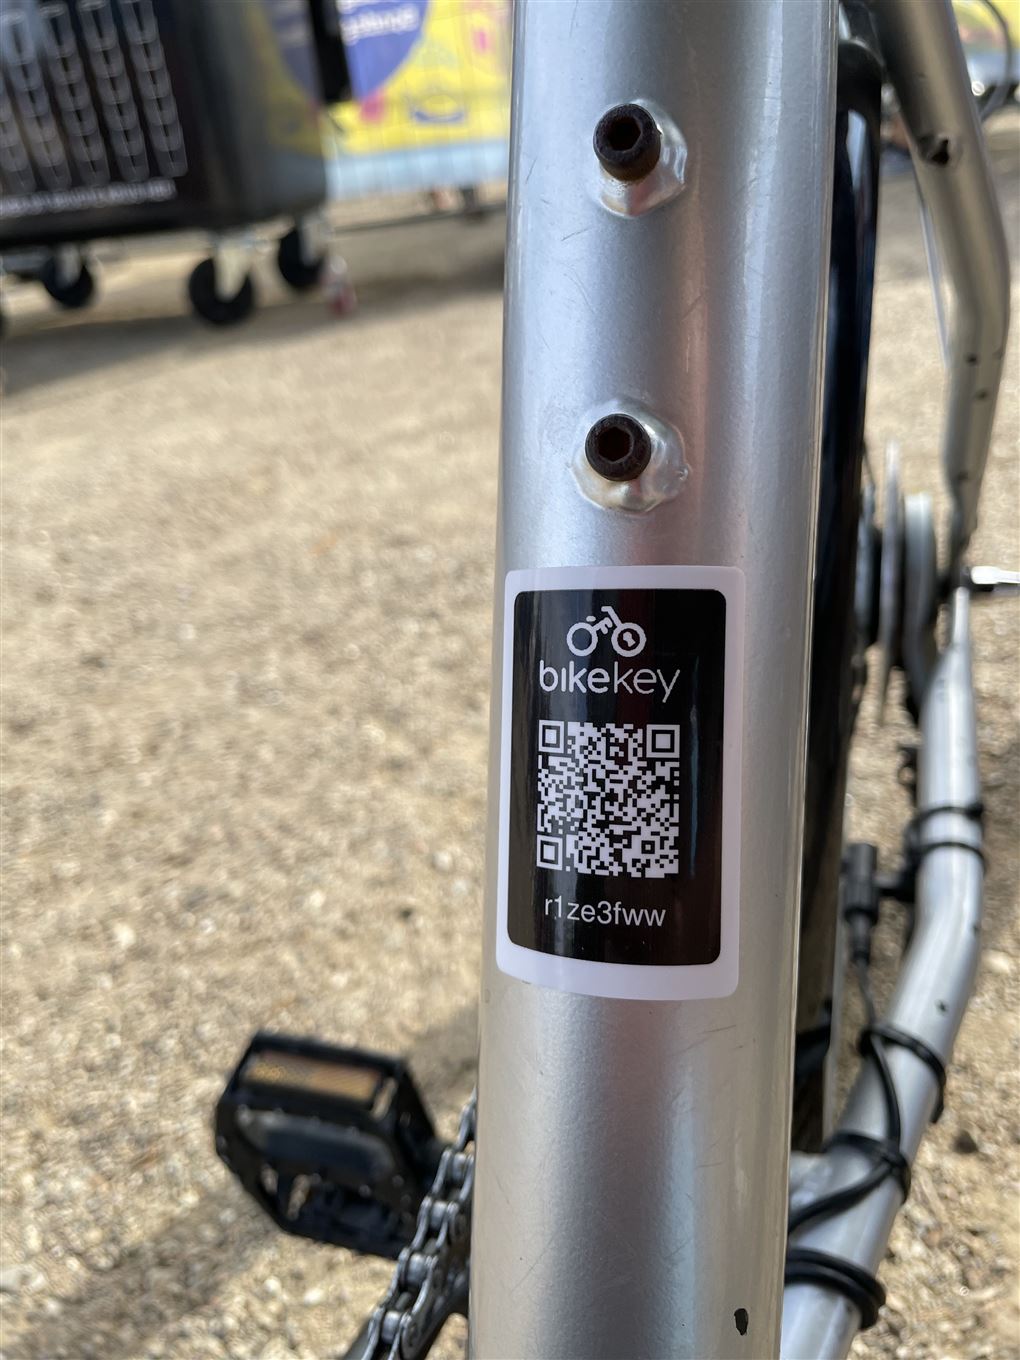 De finde din stjålne cykel helt gratis - Avisen.dk